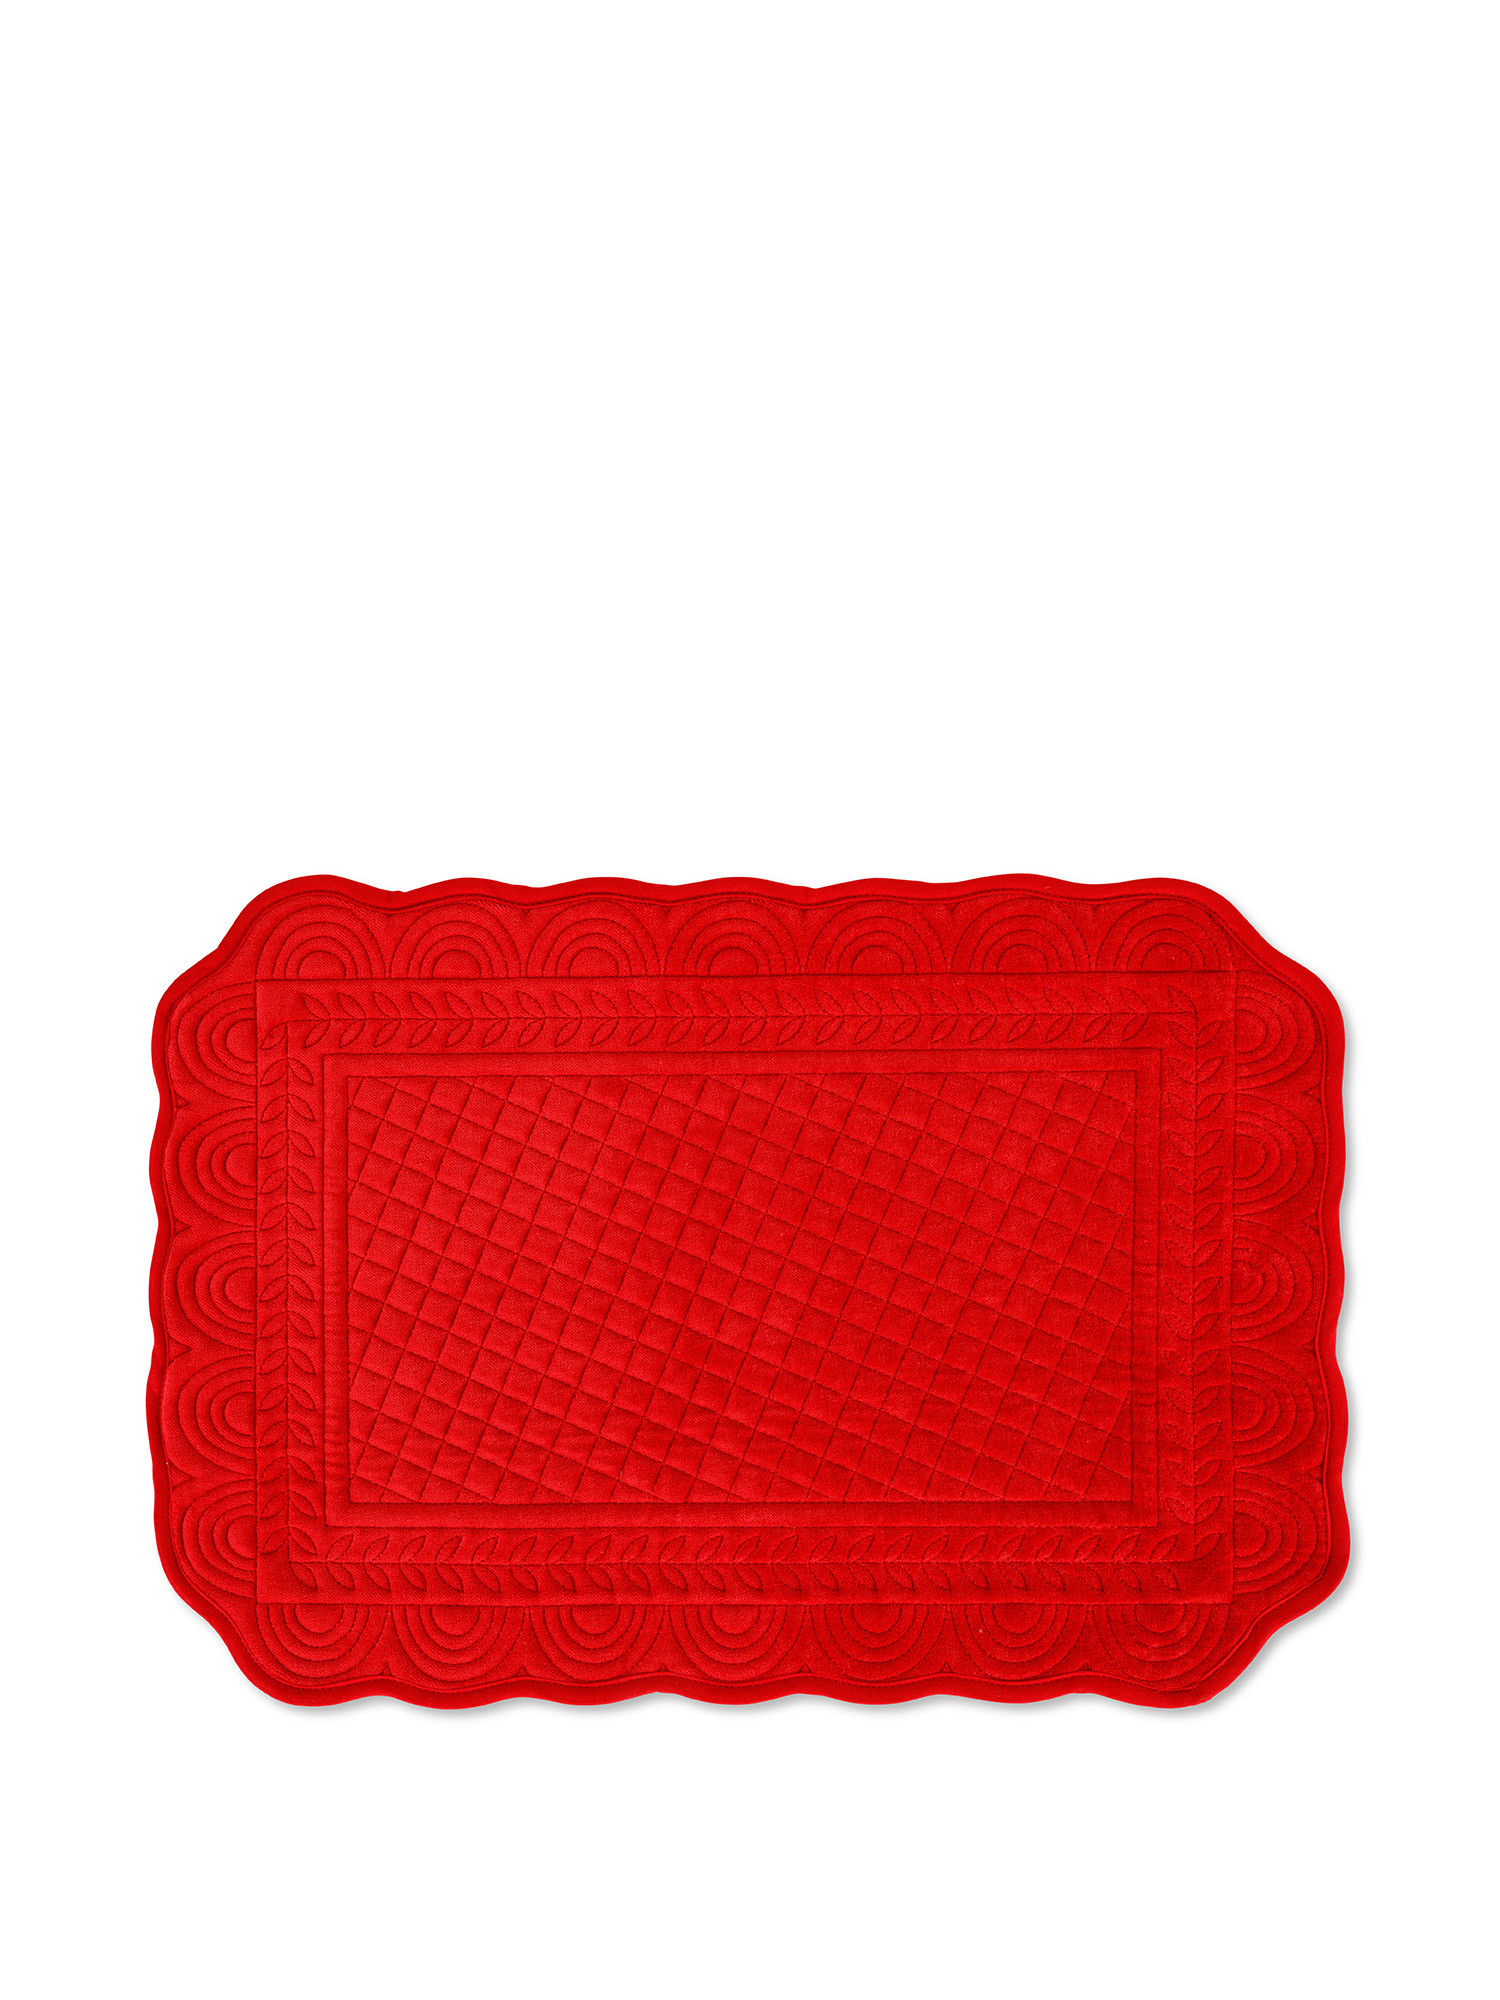 Tovaglietta trapuntata velluto di cotone tinta unita, Rosso, large image number 0